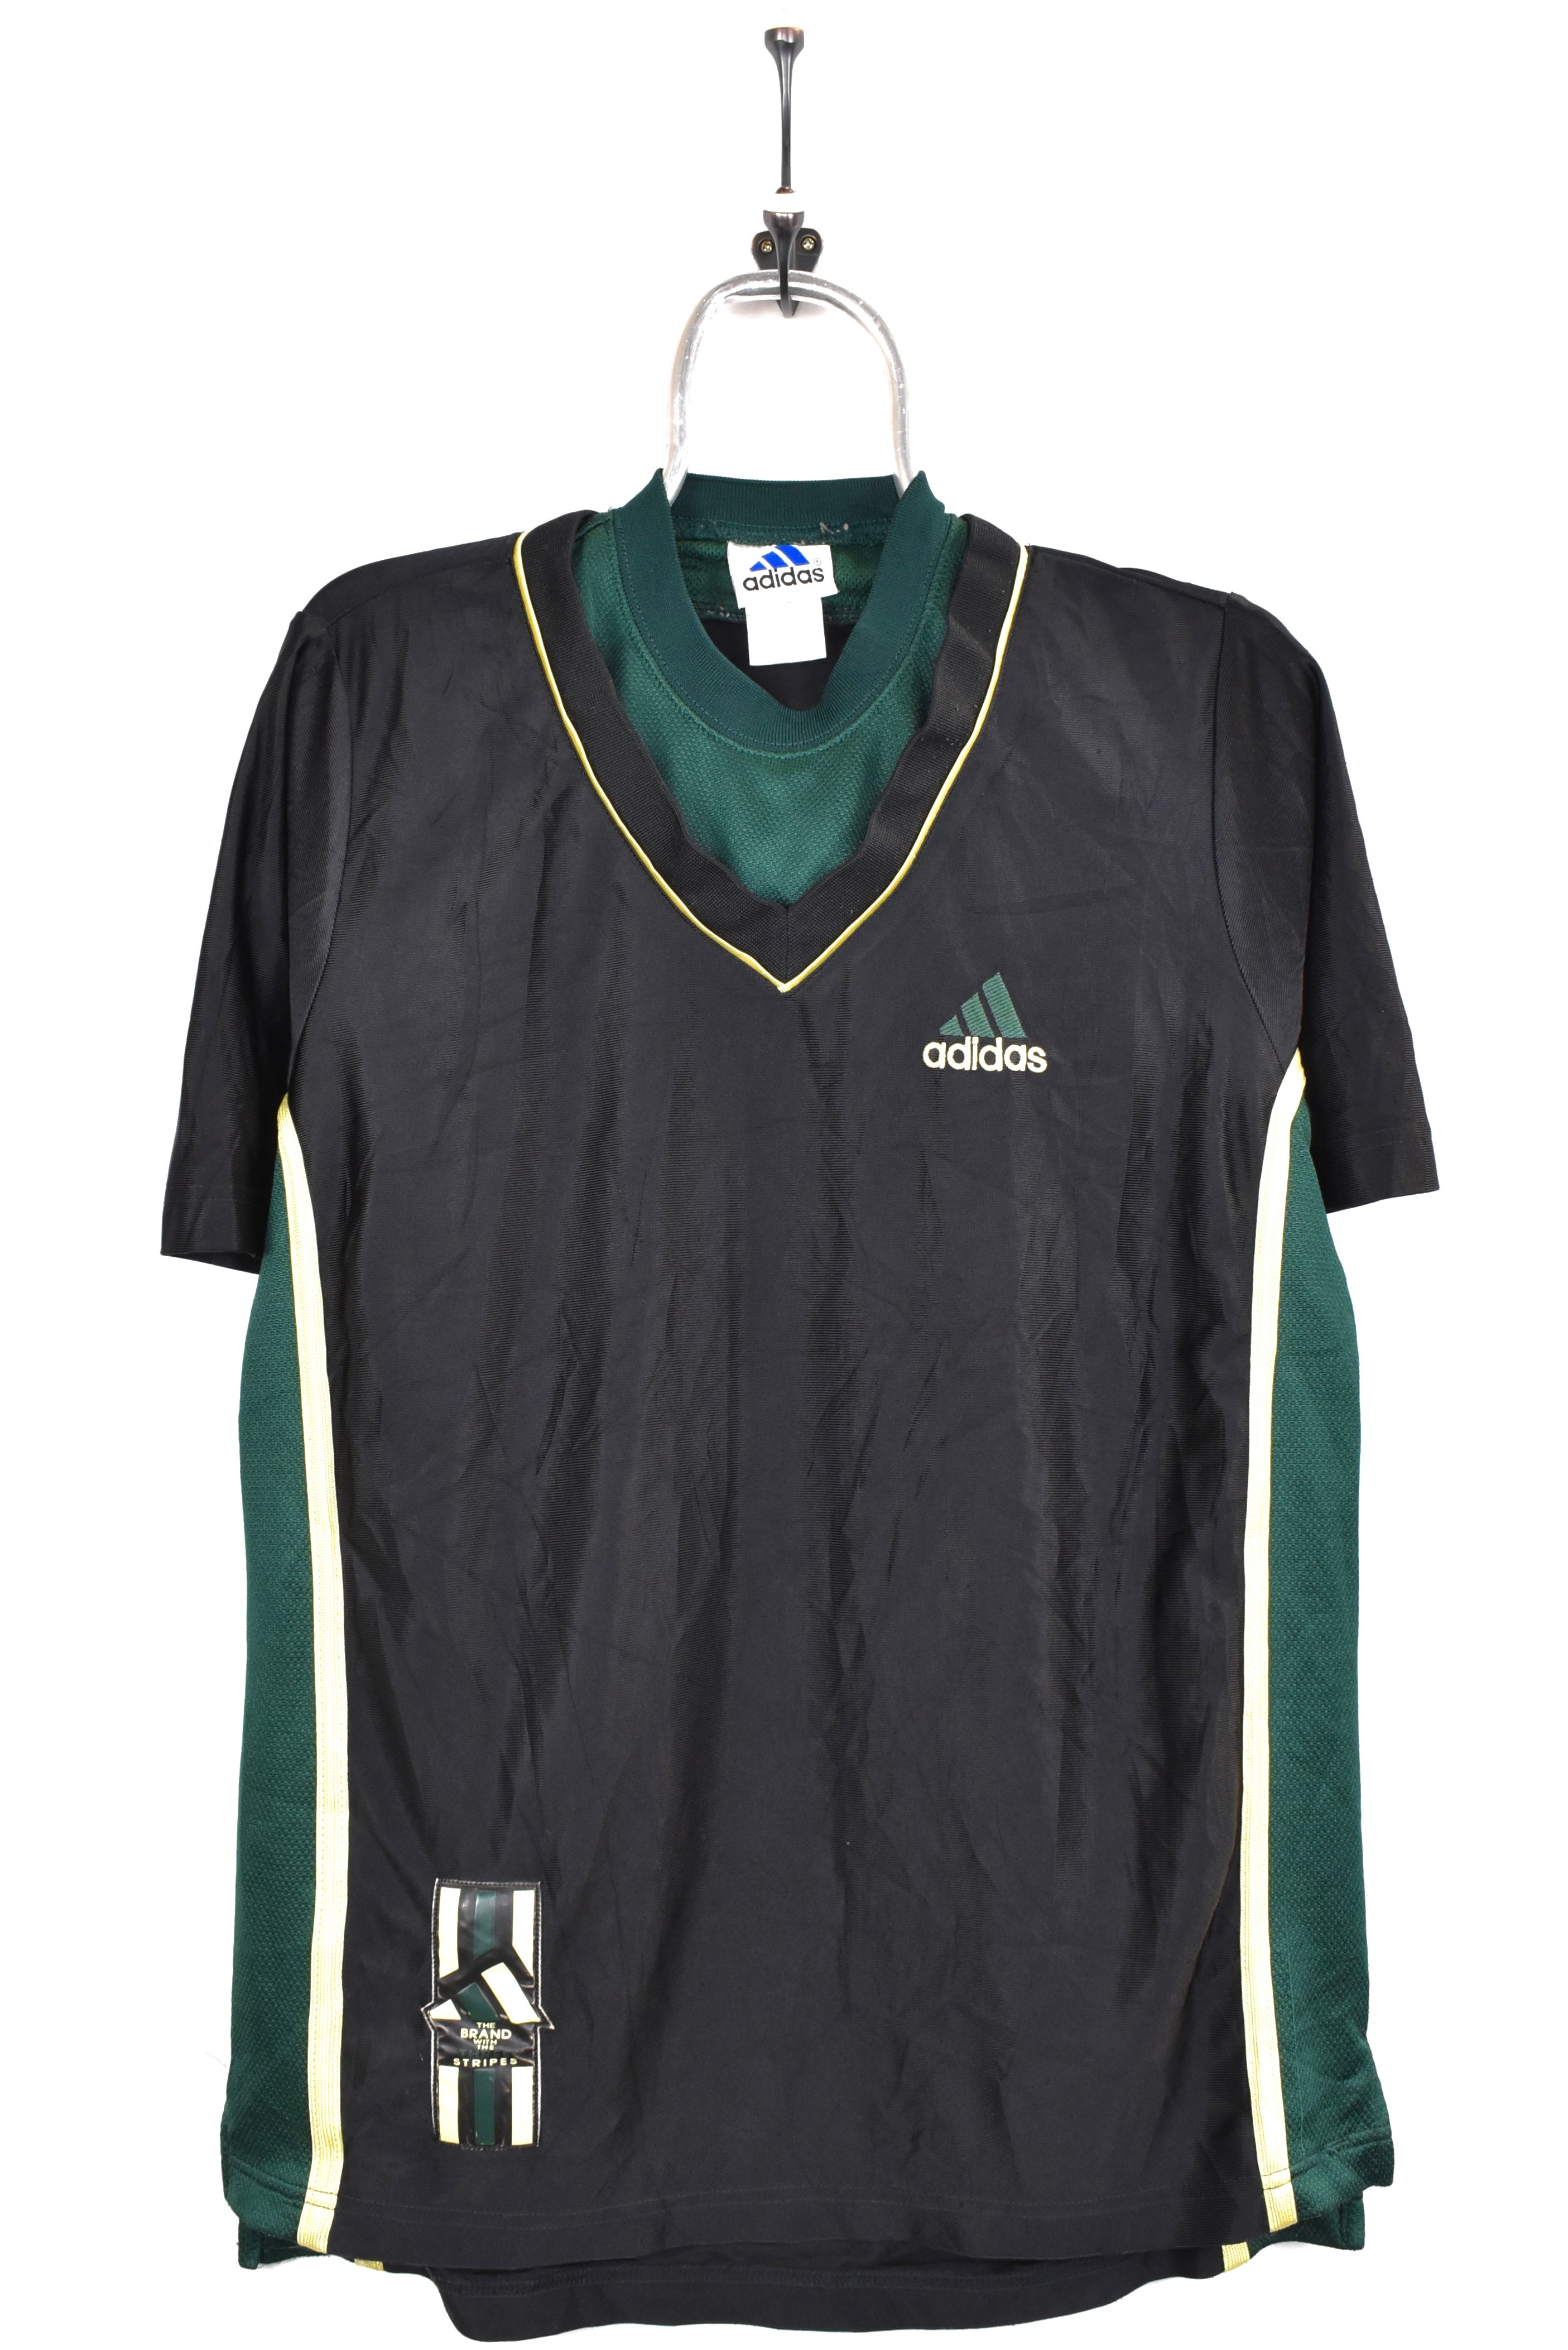 Vintage Adidas shirt, black athletic embroidered tee - AU Medium ADIDAS